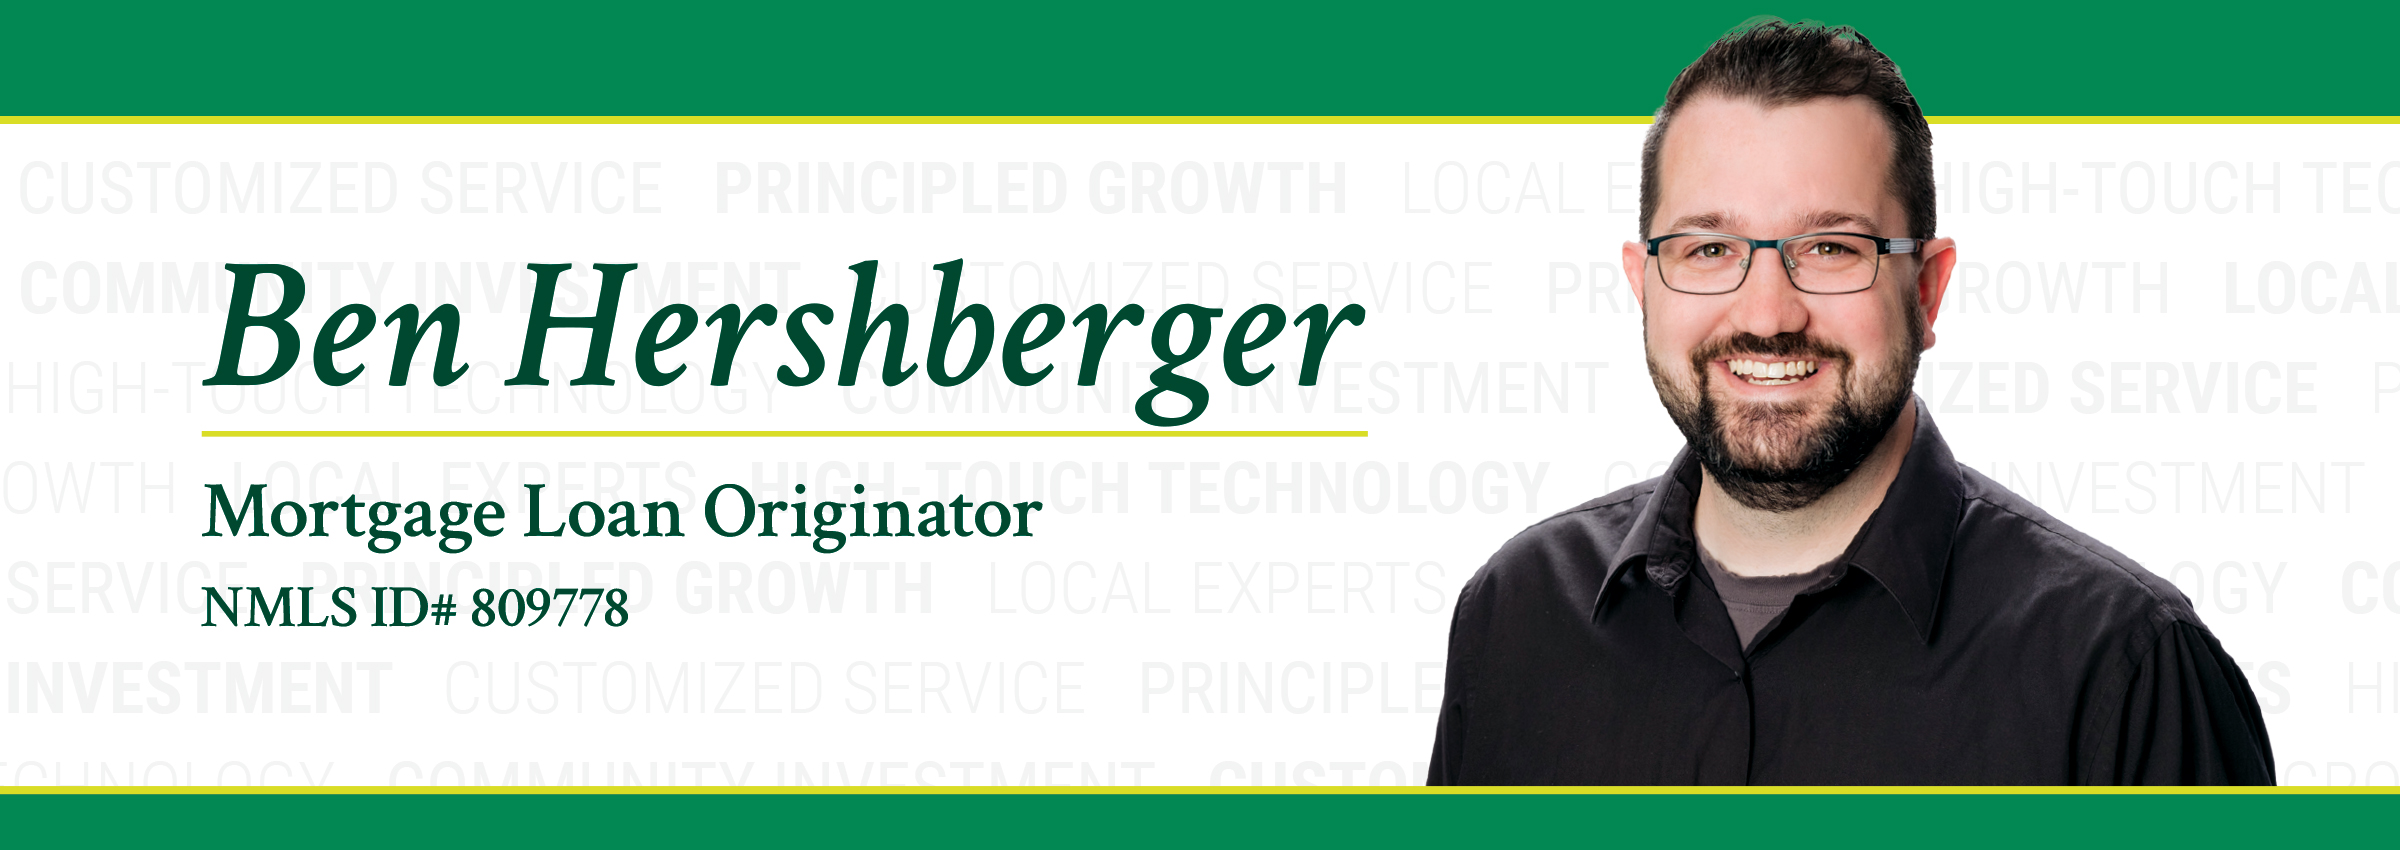 Ben Hershberger Banner Image